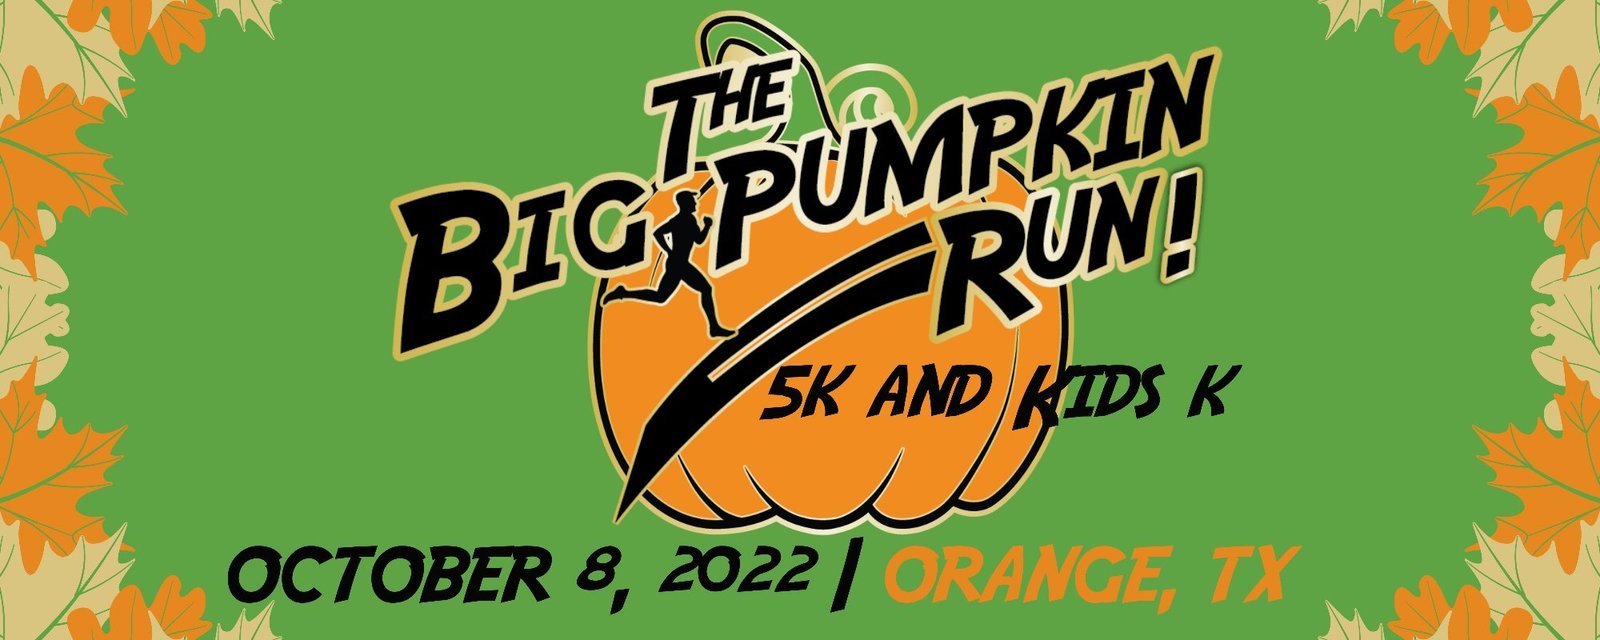 Orangetober Festival to Feature Big Pumpkin Run Orange Worthy